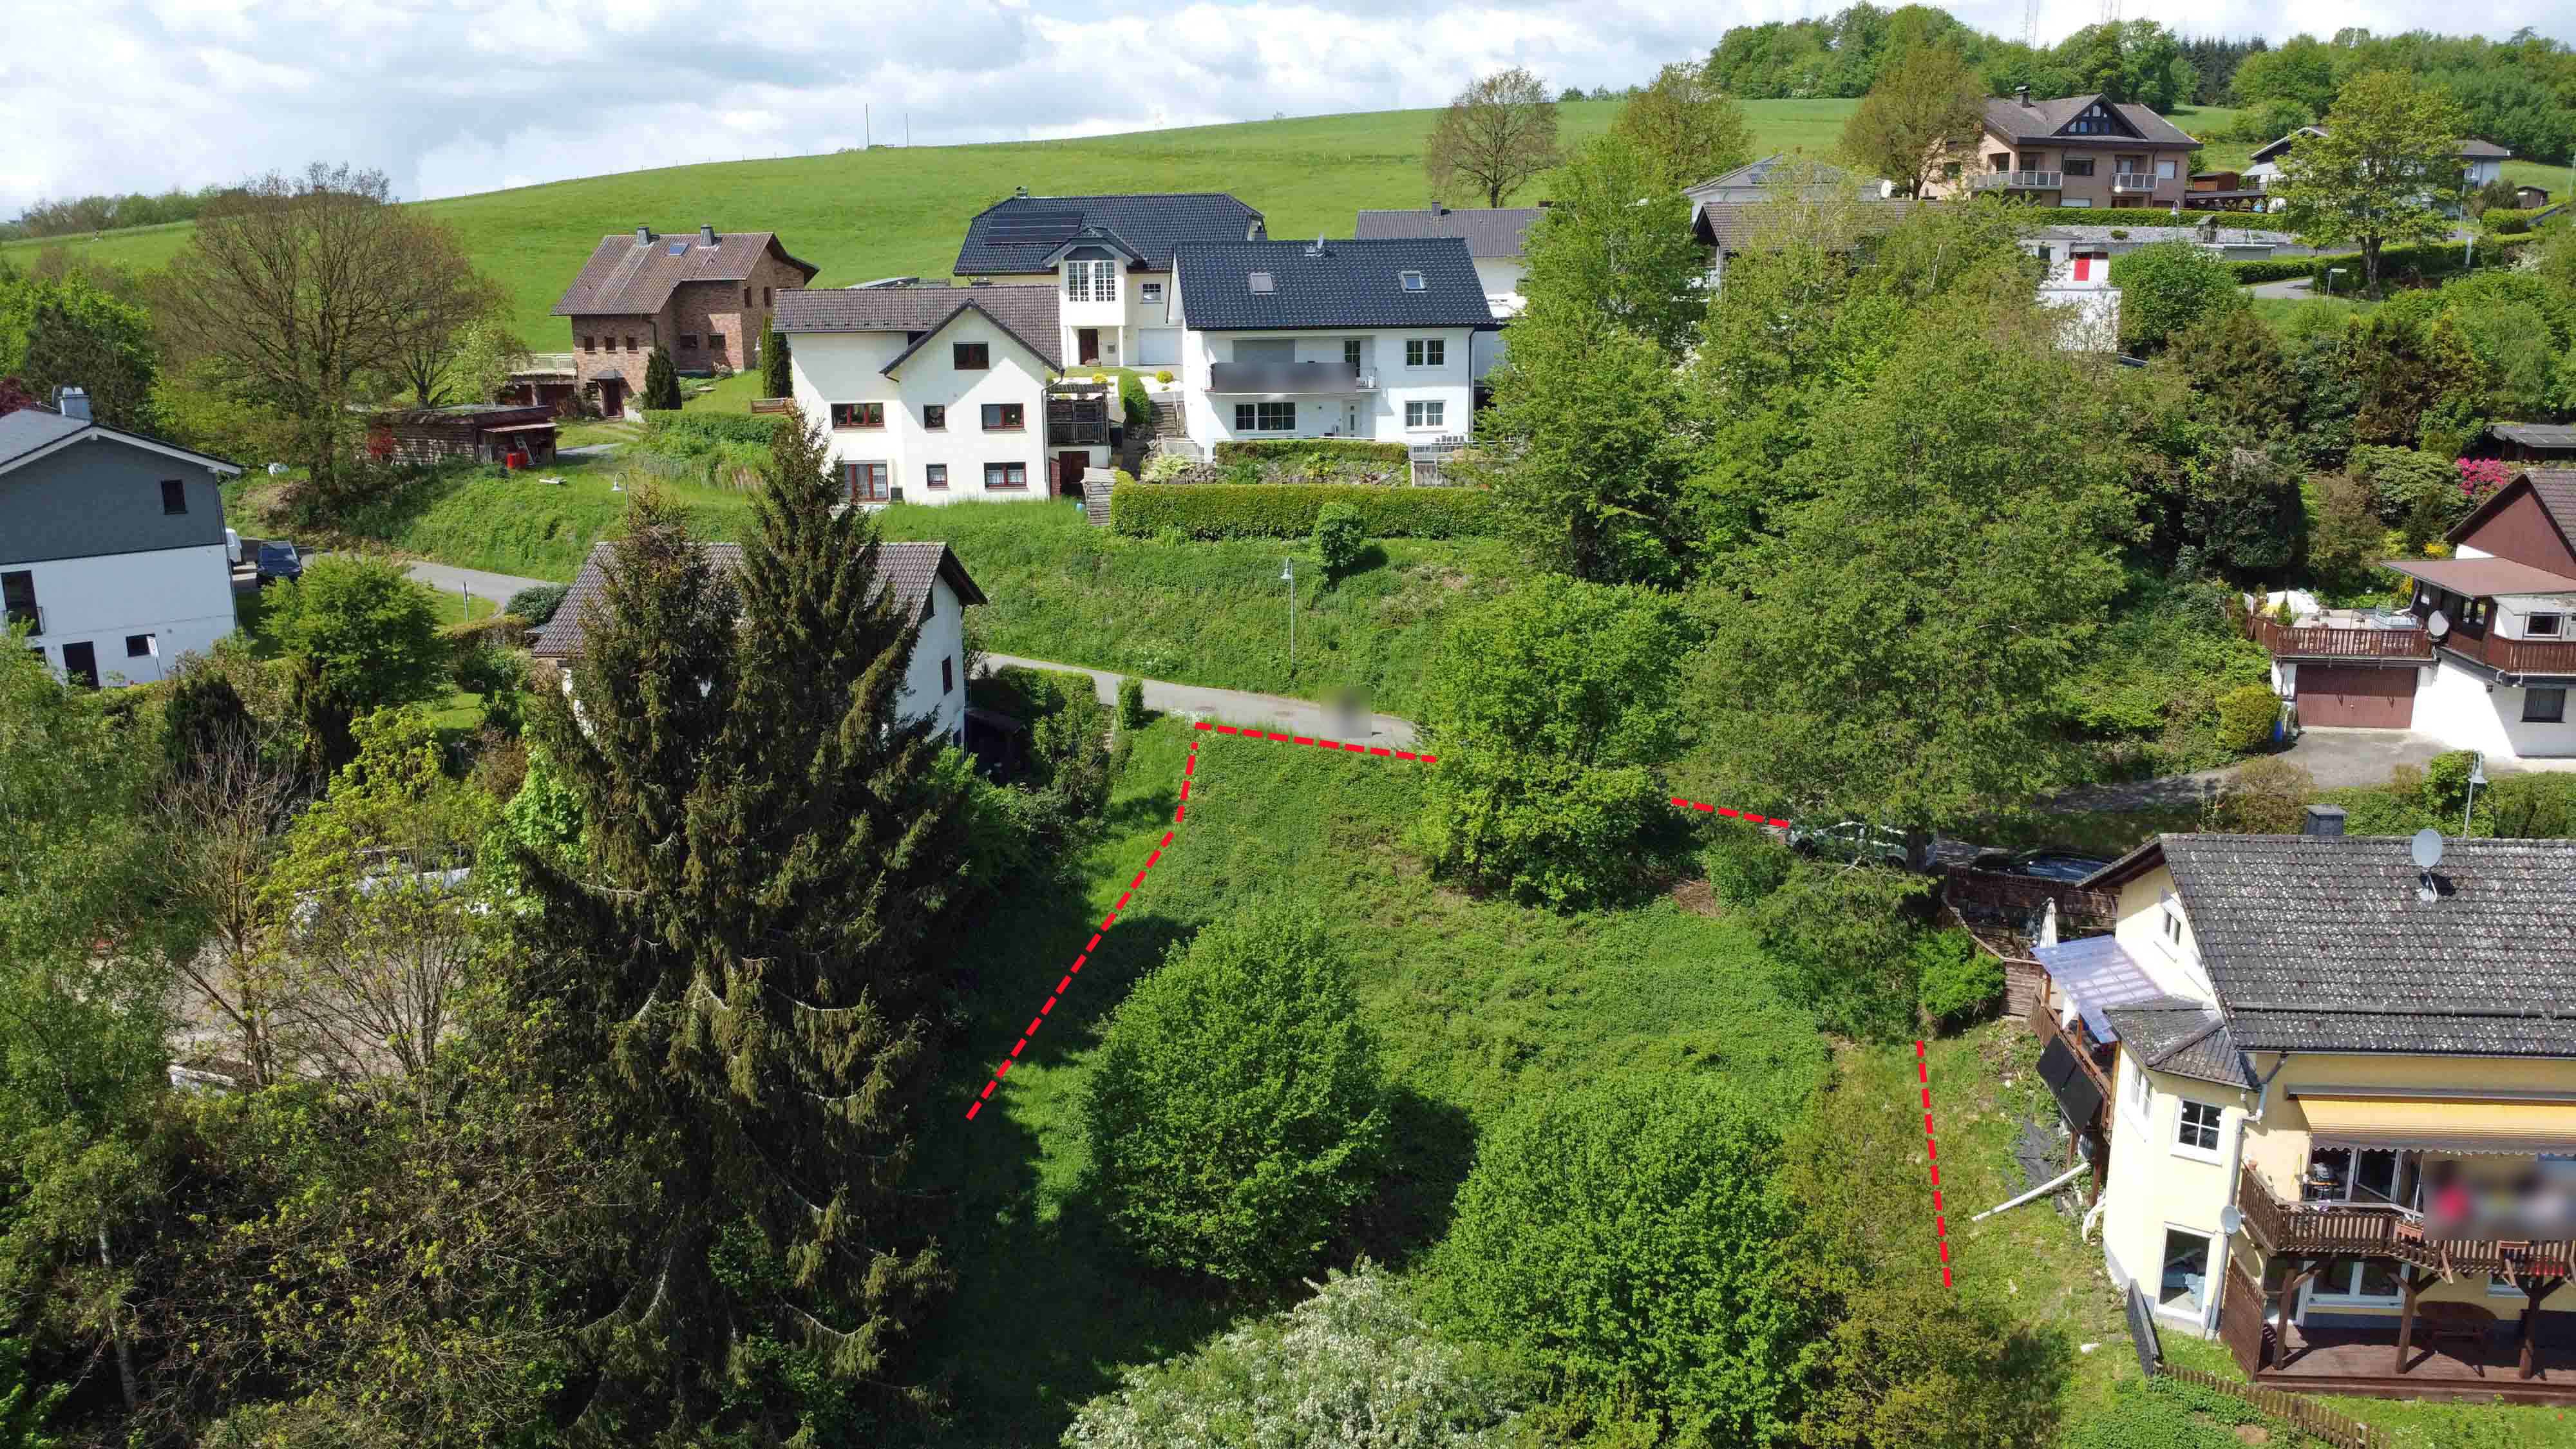 Morsbach-Holpe: Preiswertes, sofort bebaubares Baugrundstück in herrlicher Naturlage, mögliche Bebauung: siehe Nachbarhaus